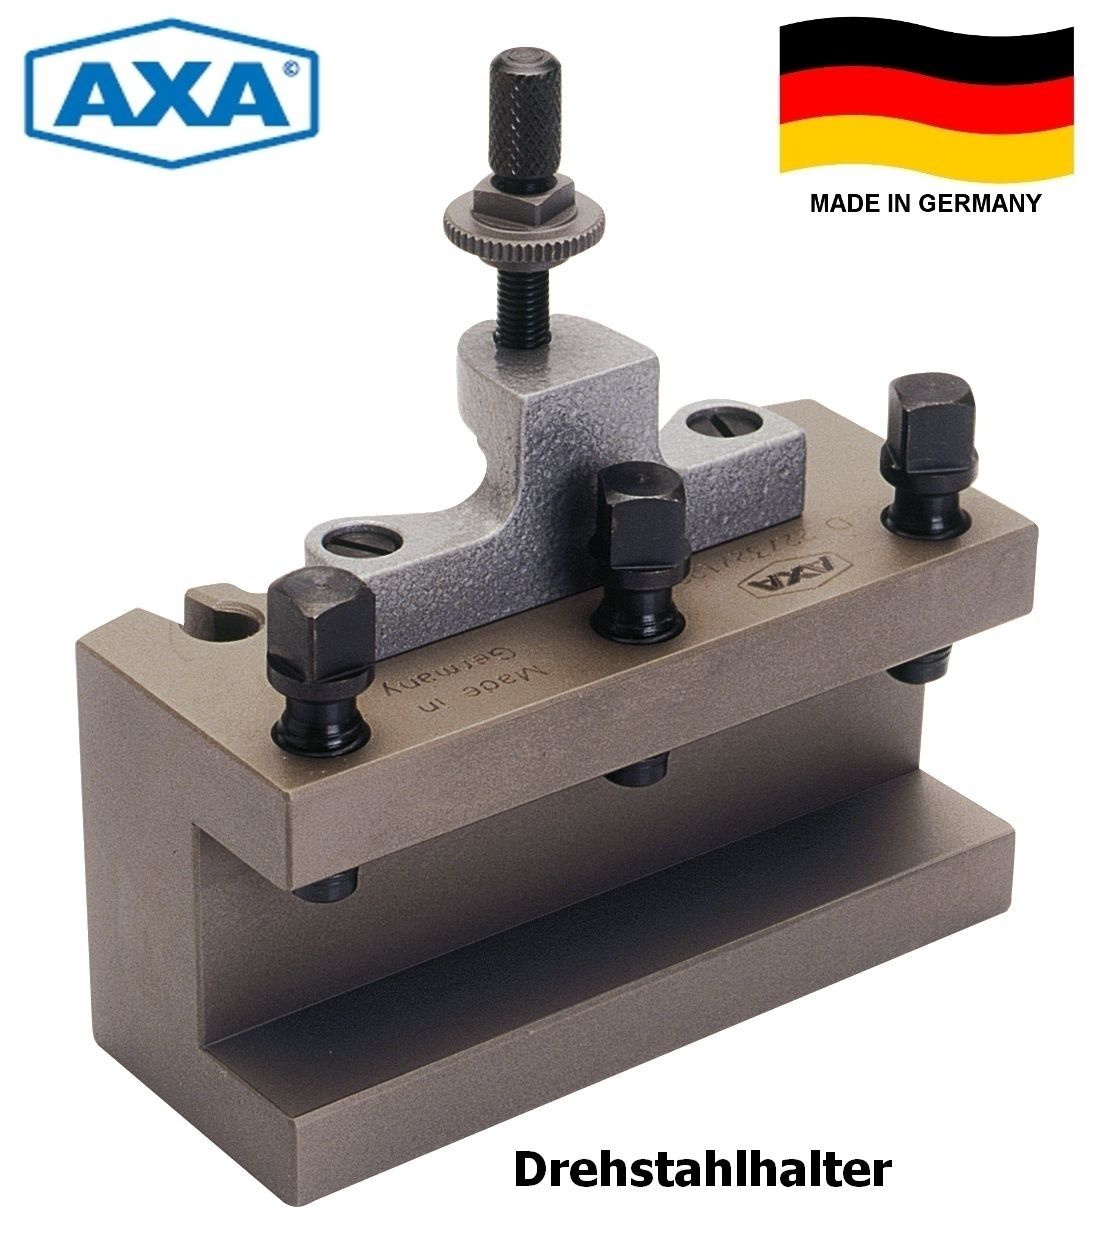 AXA Schnellwechsel-Drehstahlhalter CD 32150 | D33/32/150